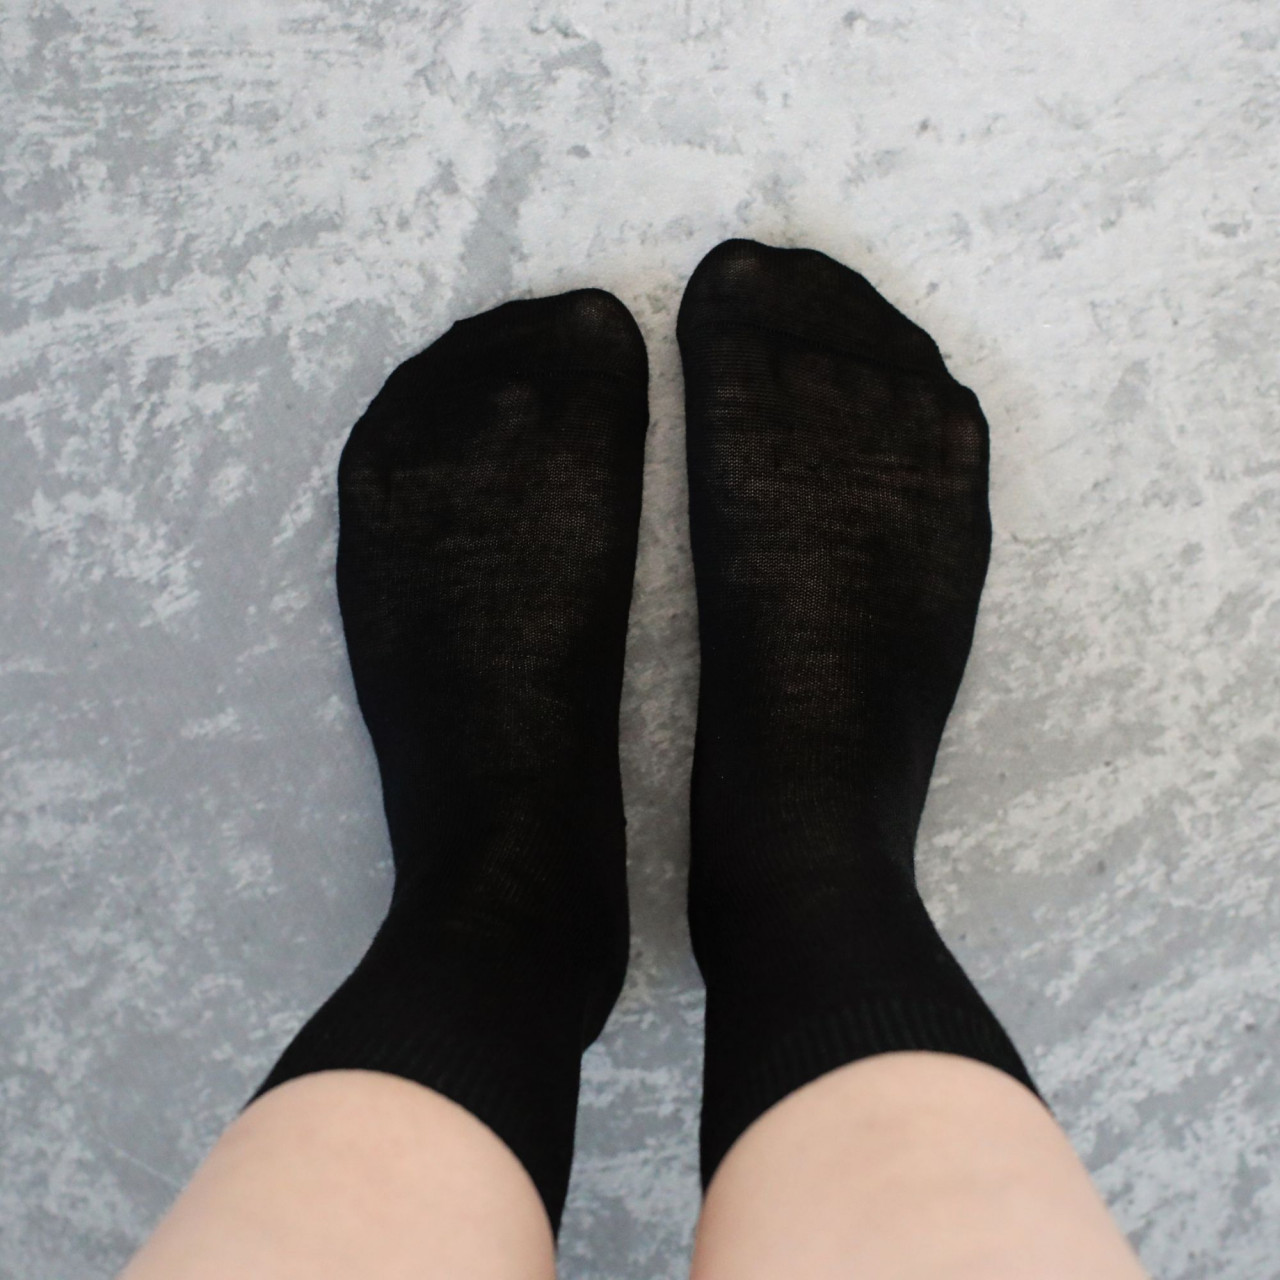 Șosete subțiri negre din lână extra fină merino 92%, marimi 35-40